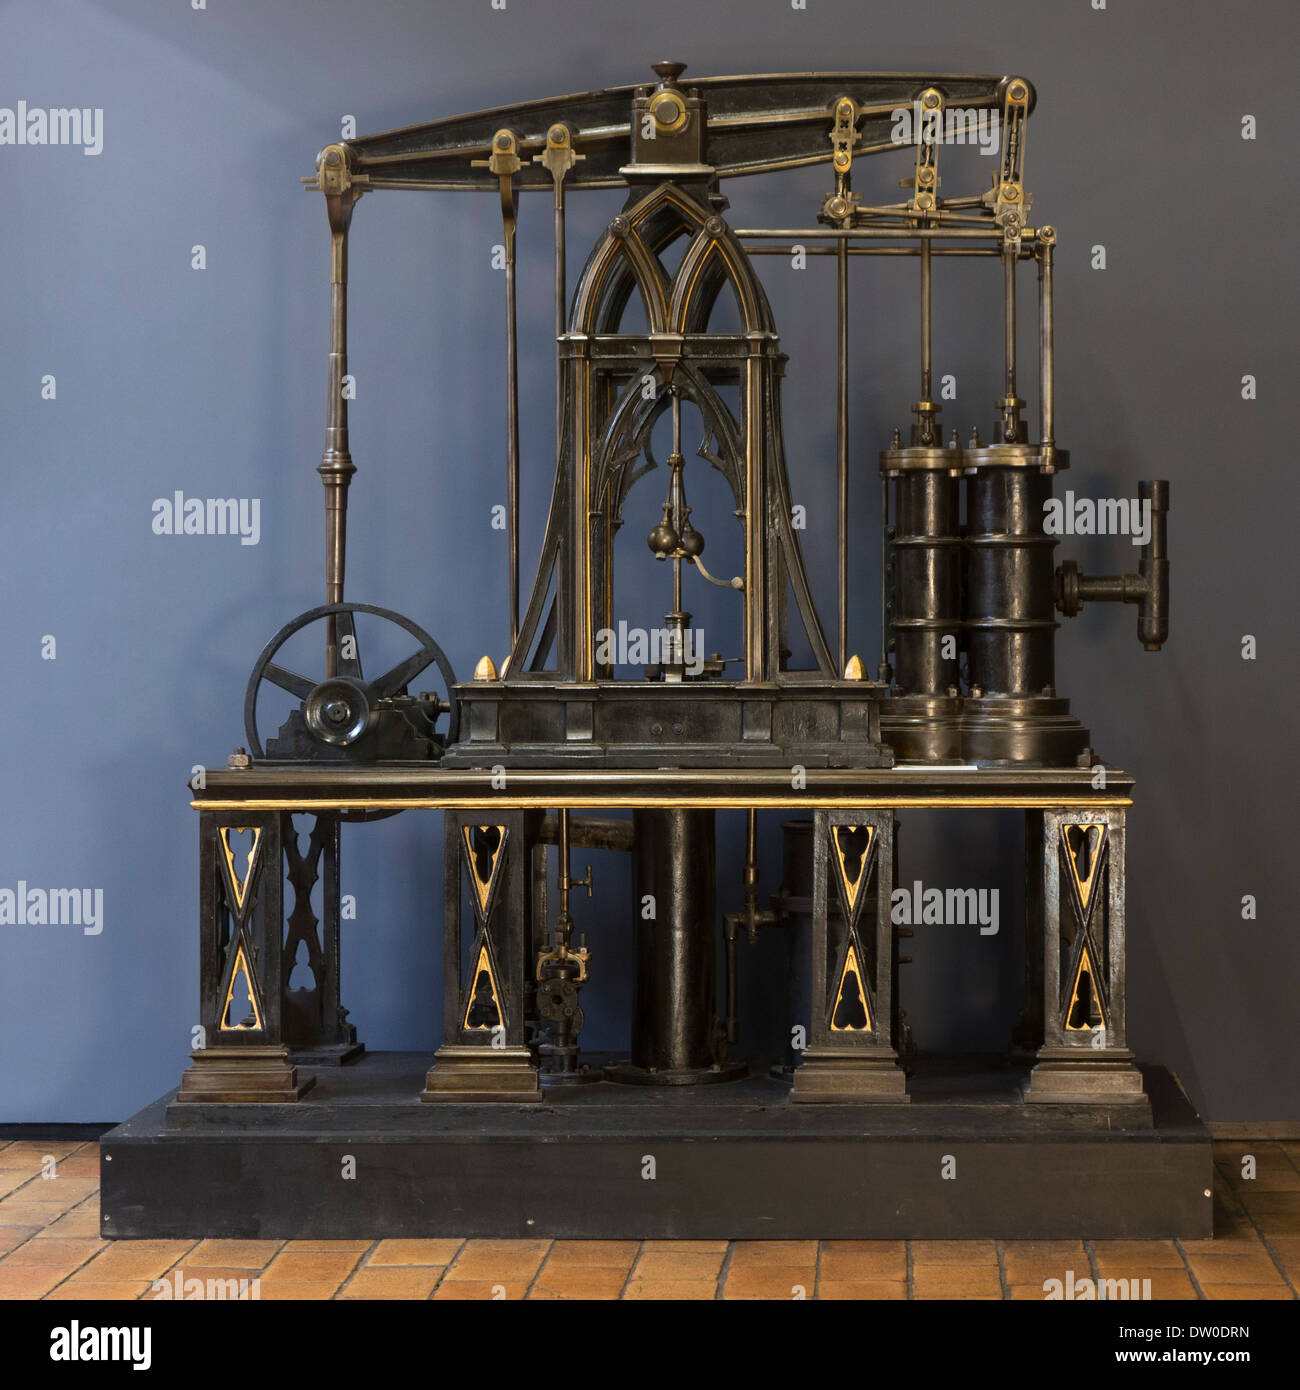 19ème siècle ancien style machine à vapeur de Newcomen en 1830, l'archéologie industrielle MIAT museum, Gand, Belgique Banque D'Images